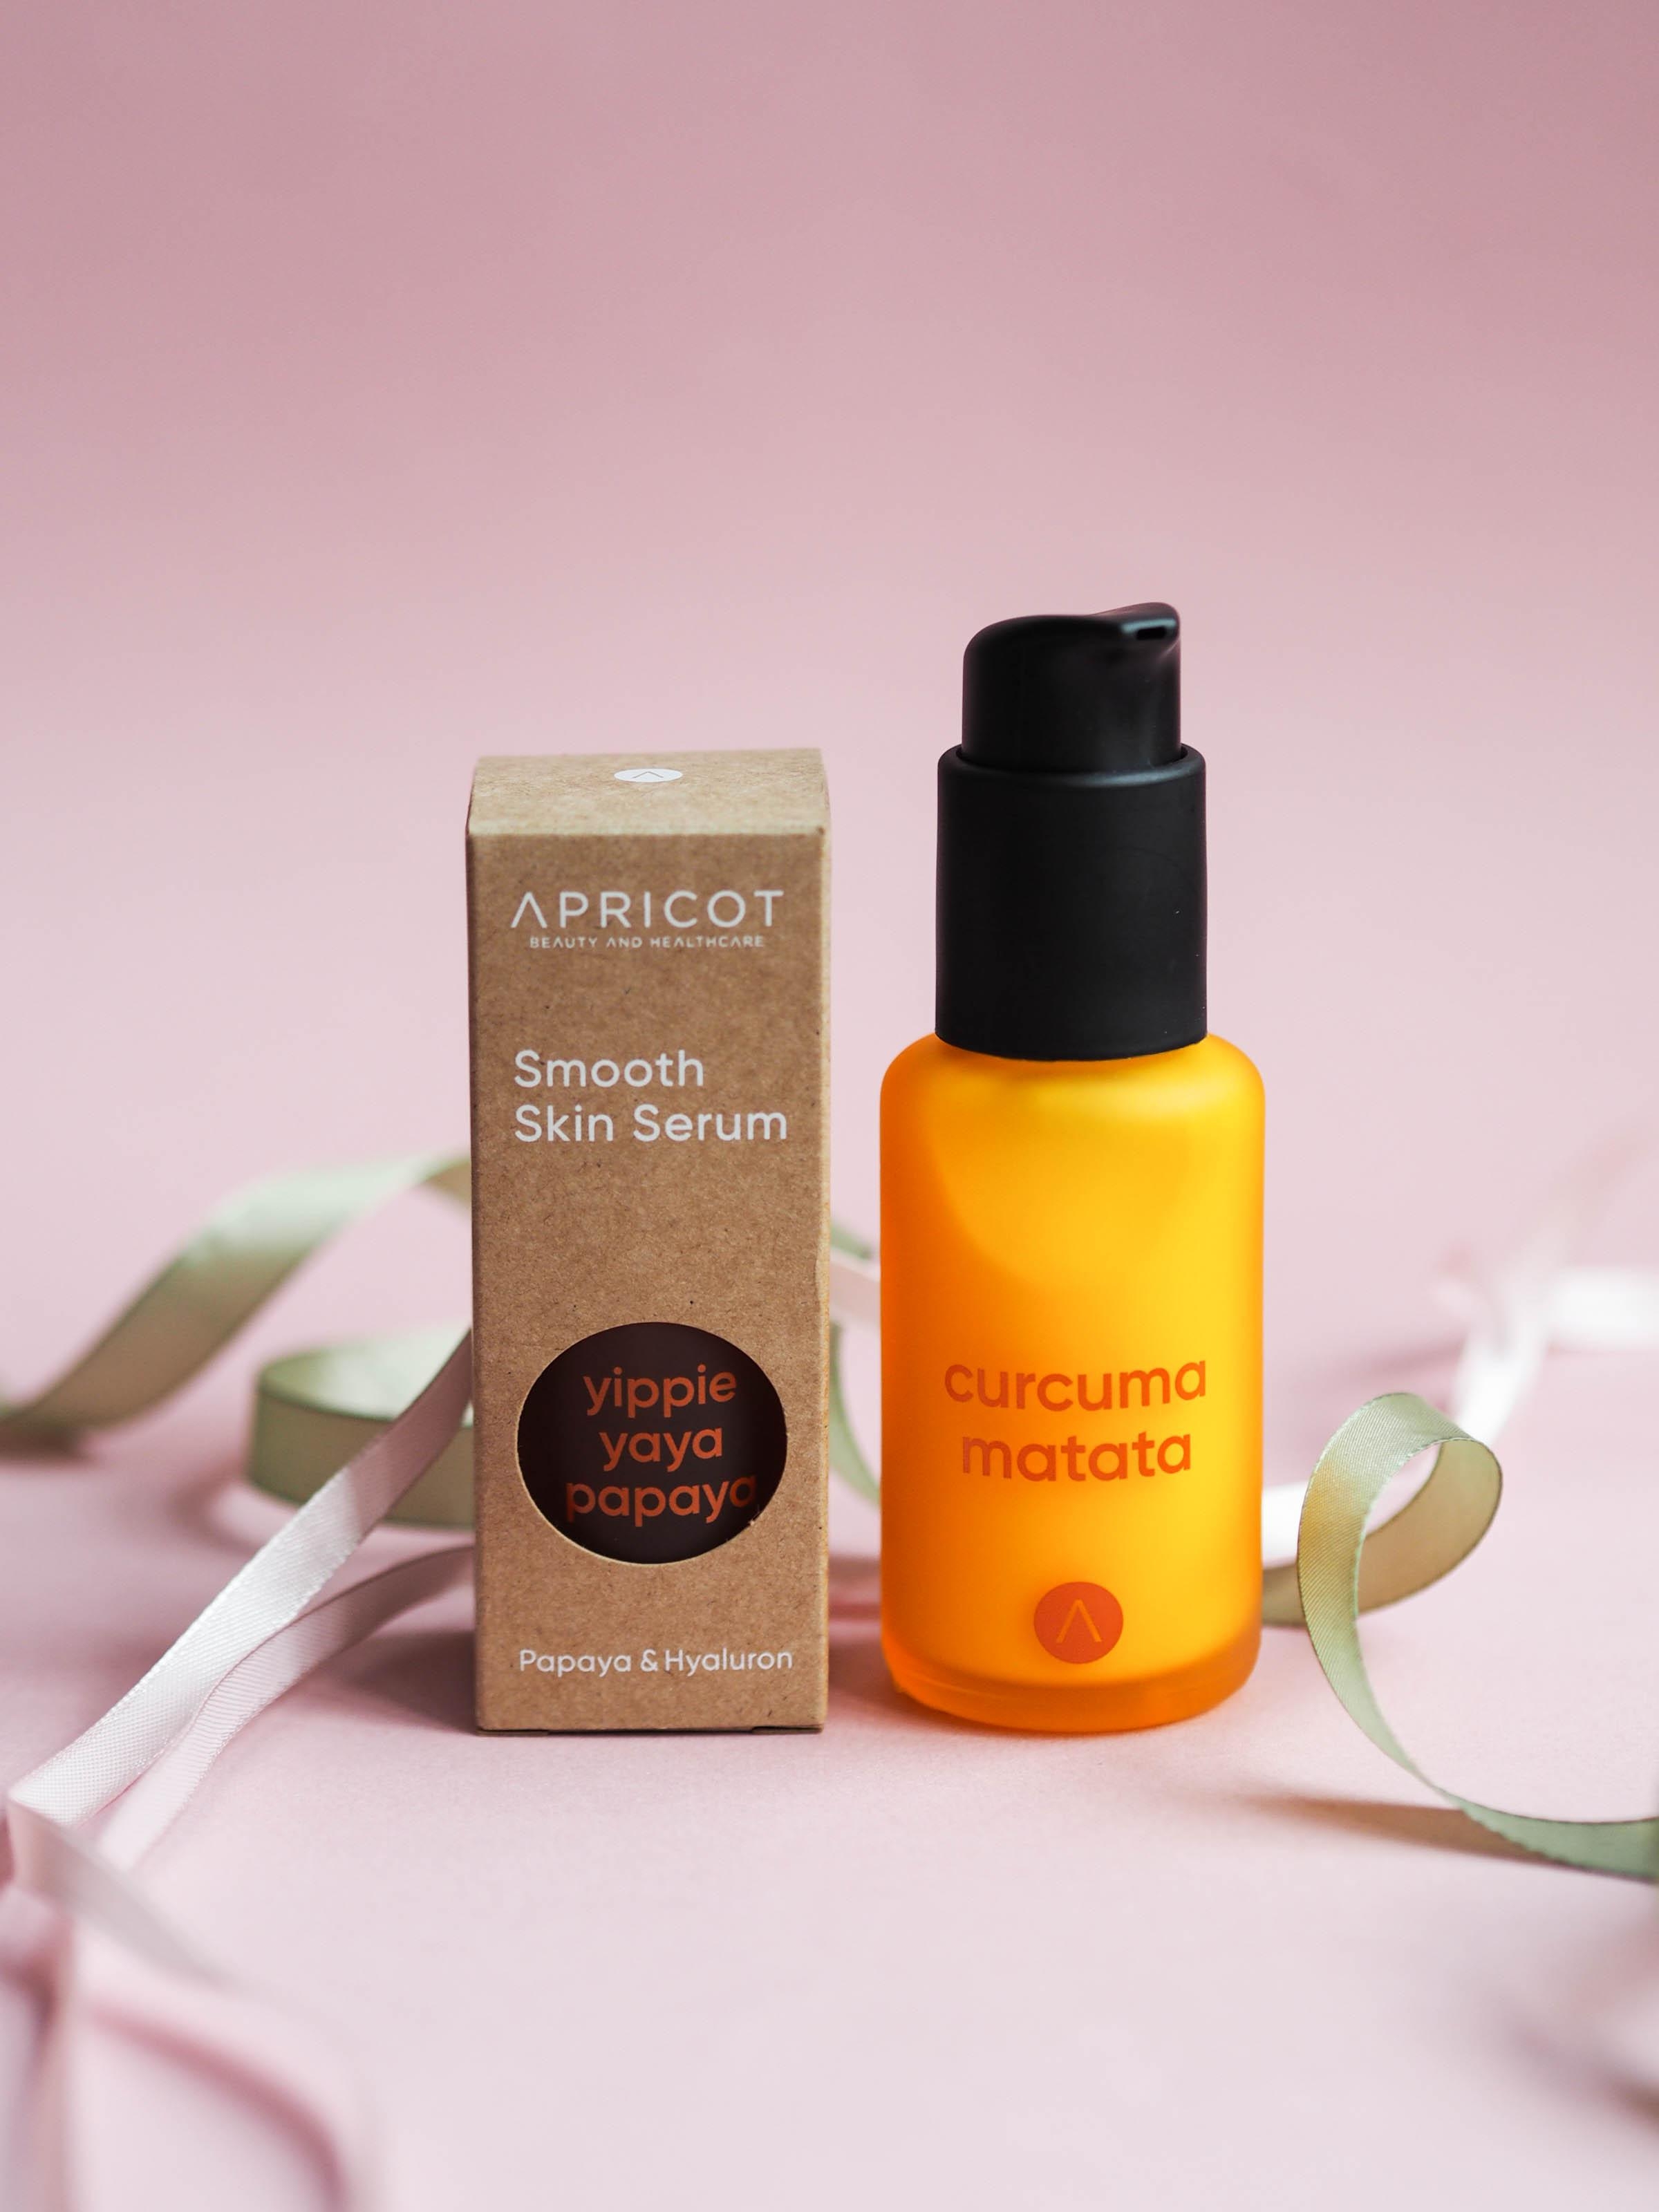 Curcuma Matata: Die Kosmetik von Apricot wirkt sich mit minimalen Zutaten maximal aus - yay! #apricot #beautylieblinge